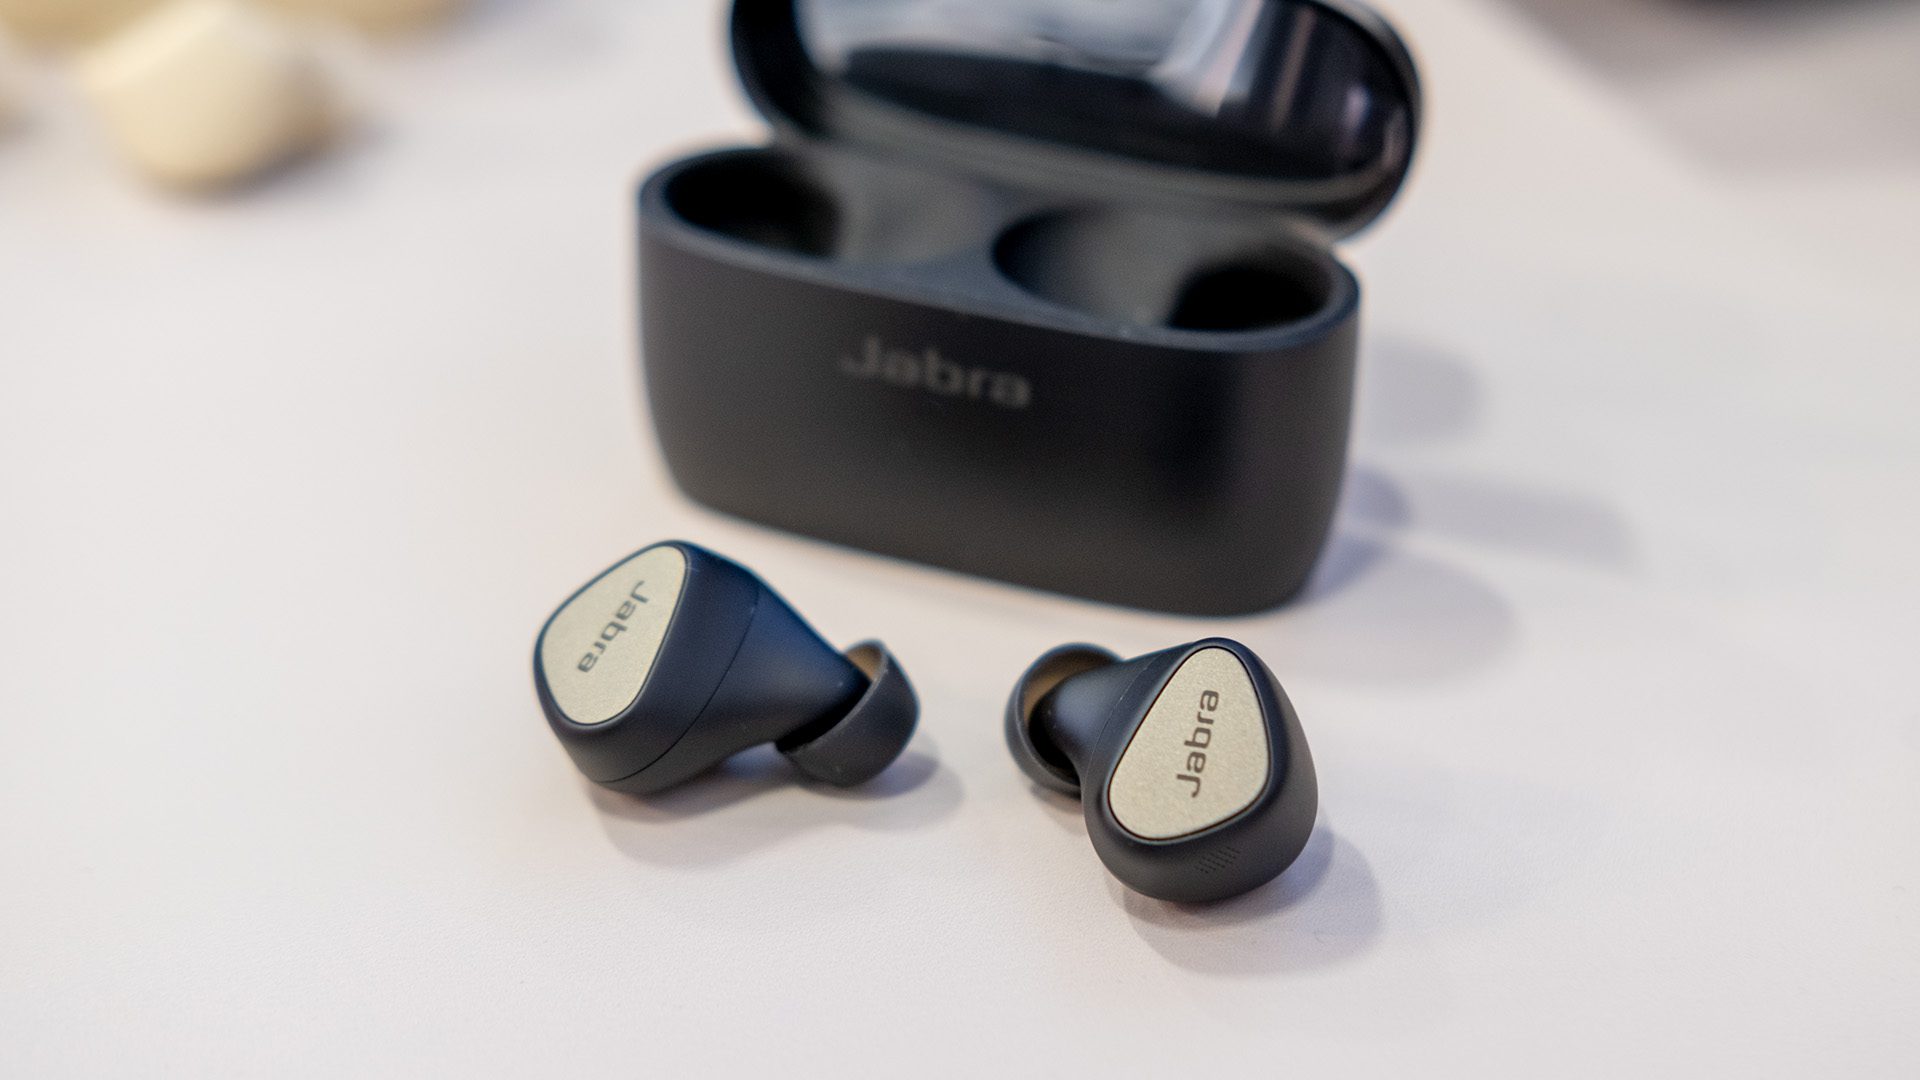 Jabra Elite 5 kulakiçi kulaklıklar, tüm zamanların en düşük fiyatlarına geri döndü